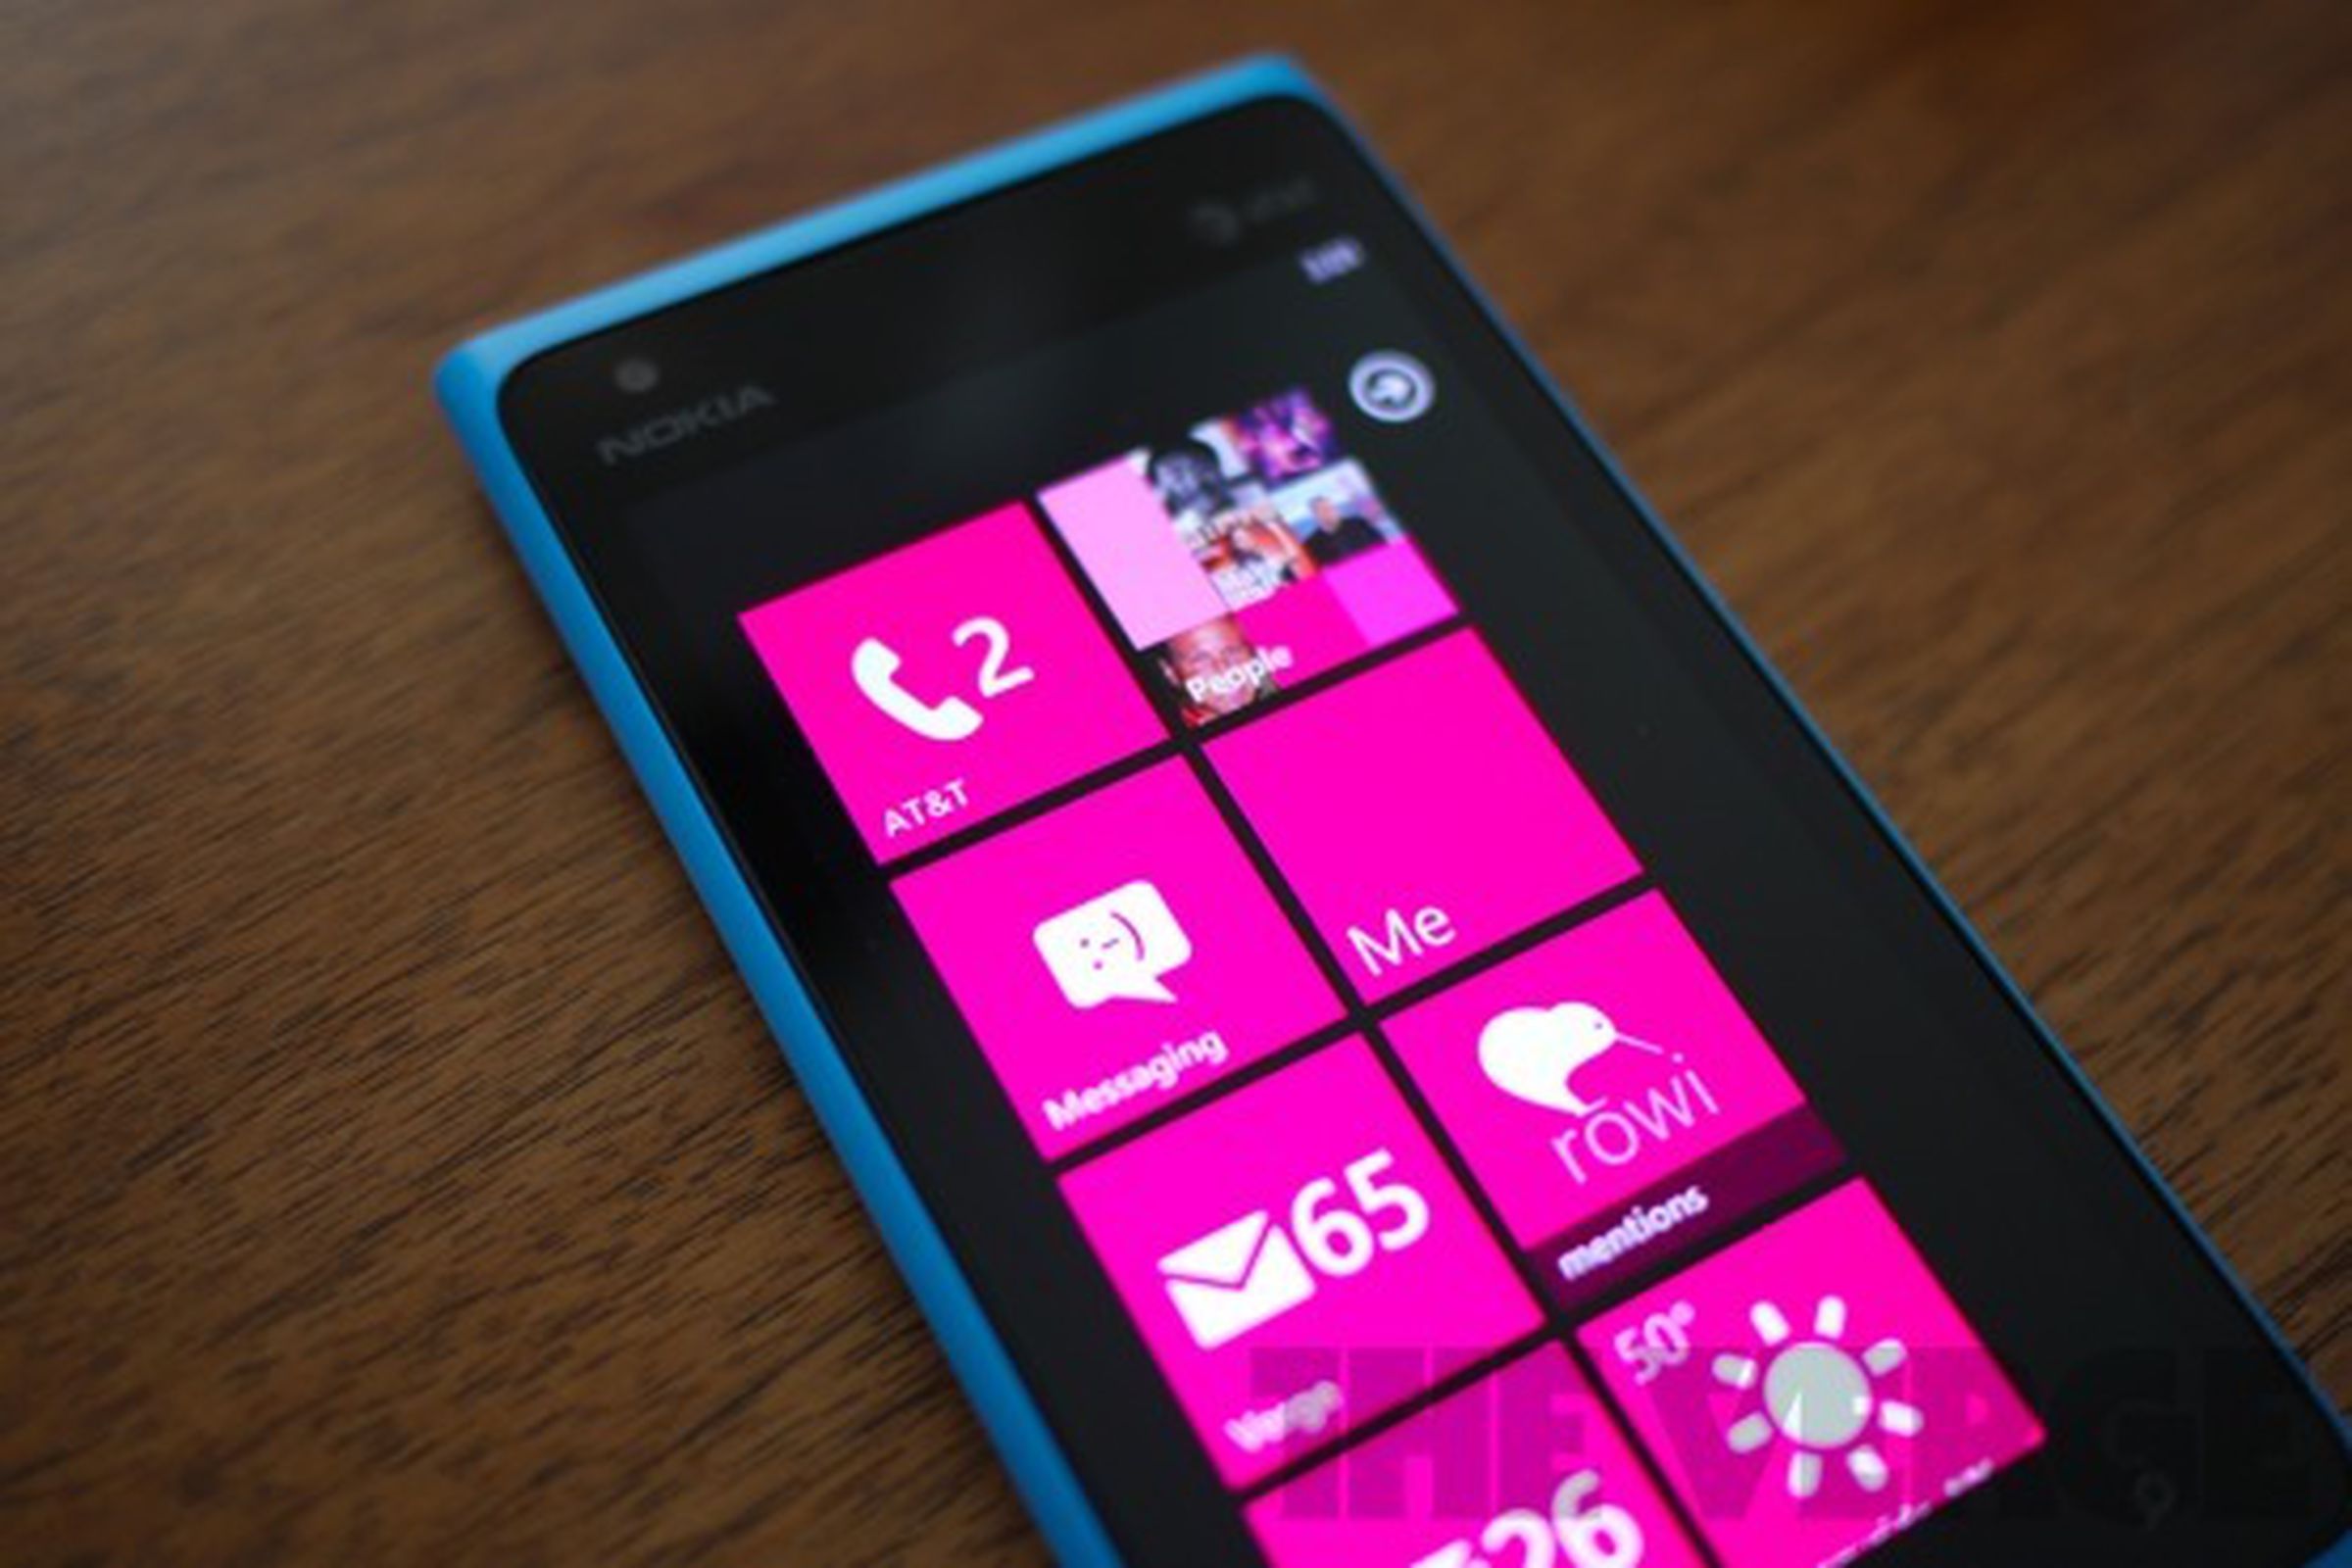 Nokia Lumia 900 software (555px)